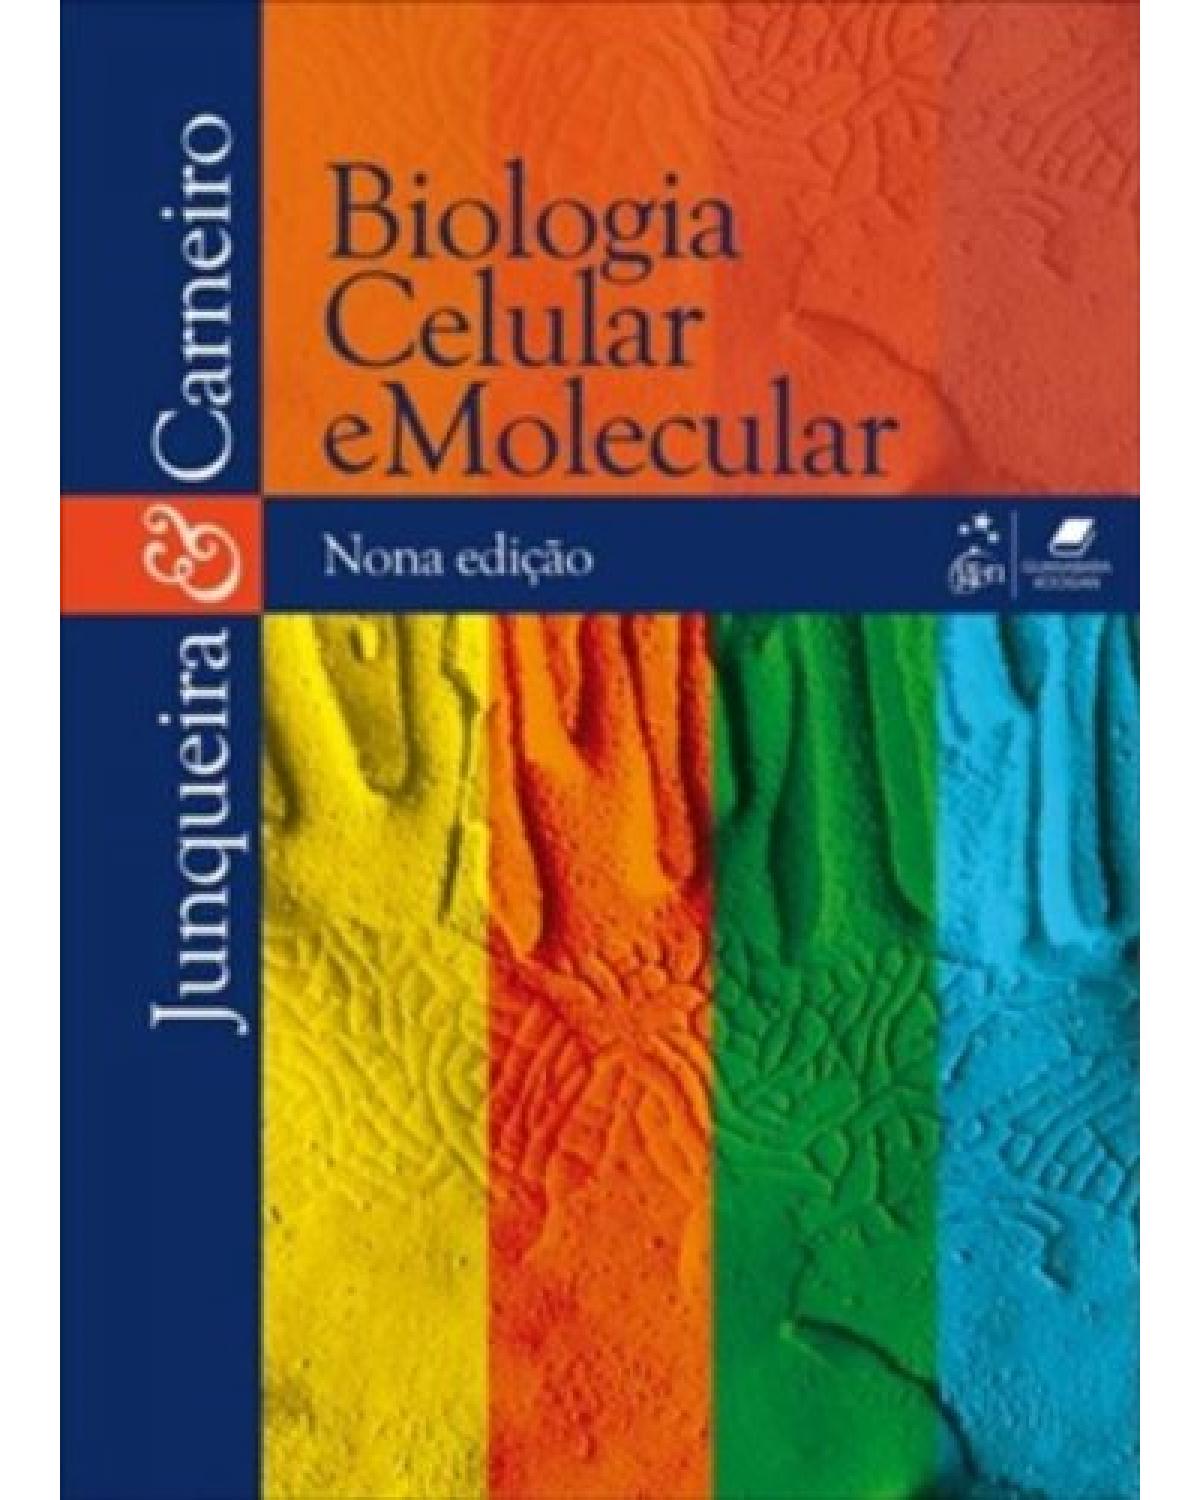 Biologia celular e molecular - 9ª Edição | 2012